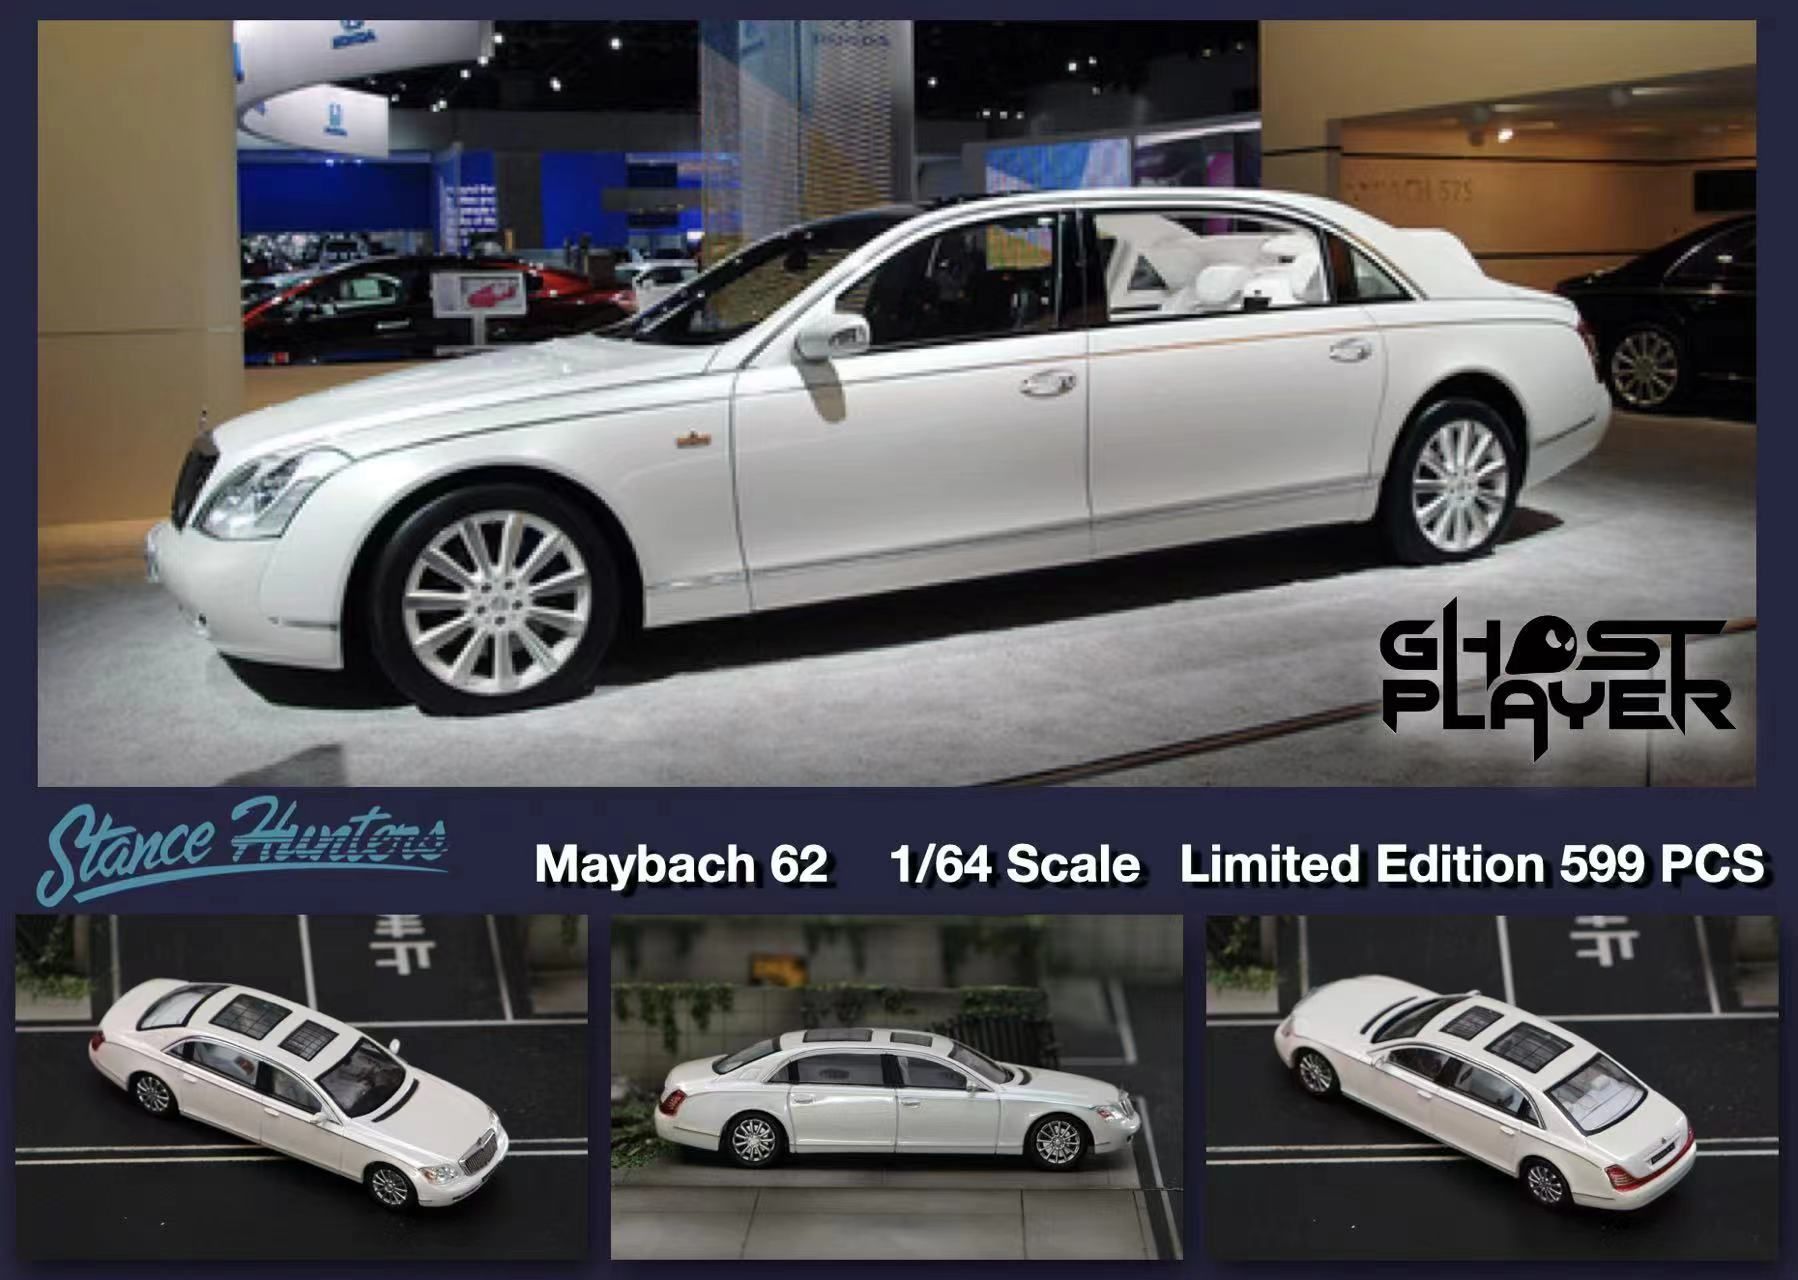  Mô hình xe Maybach 62 limited 599pcs trắng ngọc trai 1:64 Stance Hunters x Ghost player SW64056 